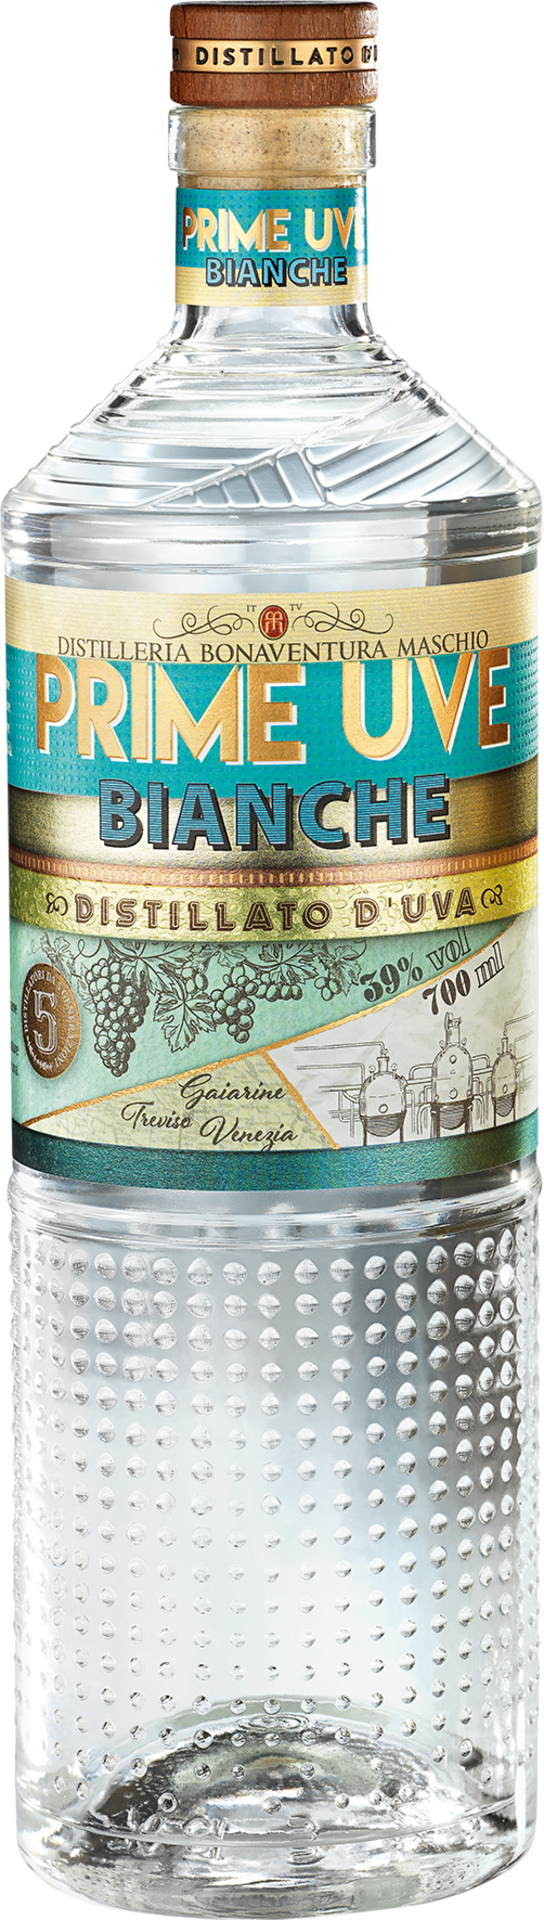 Prime Uve Bianche